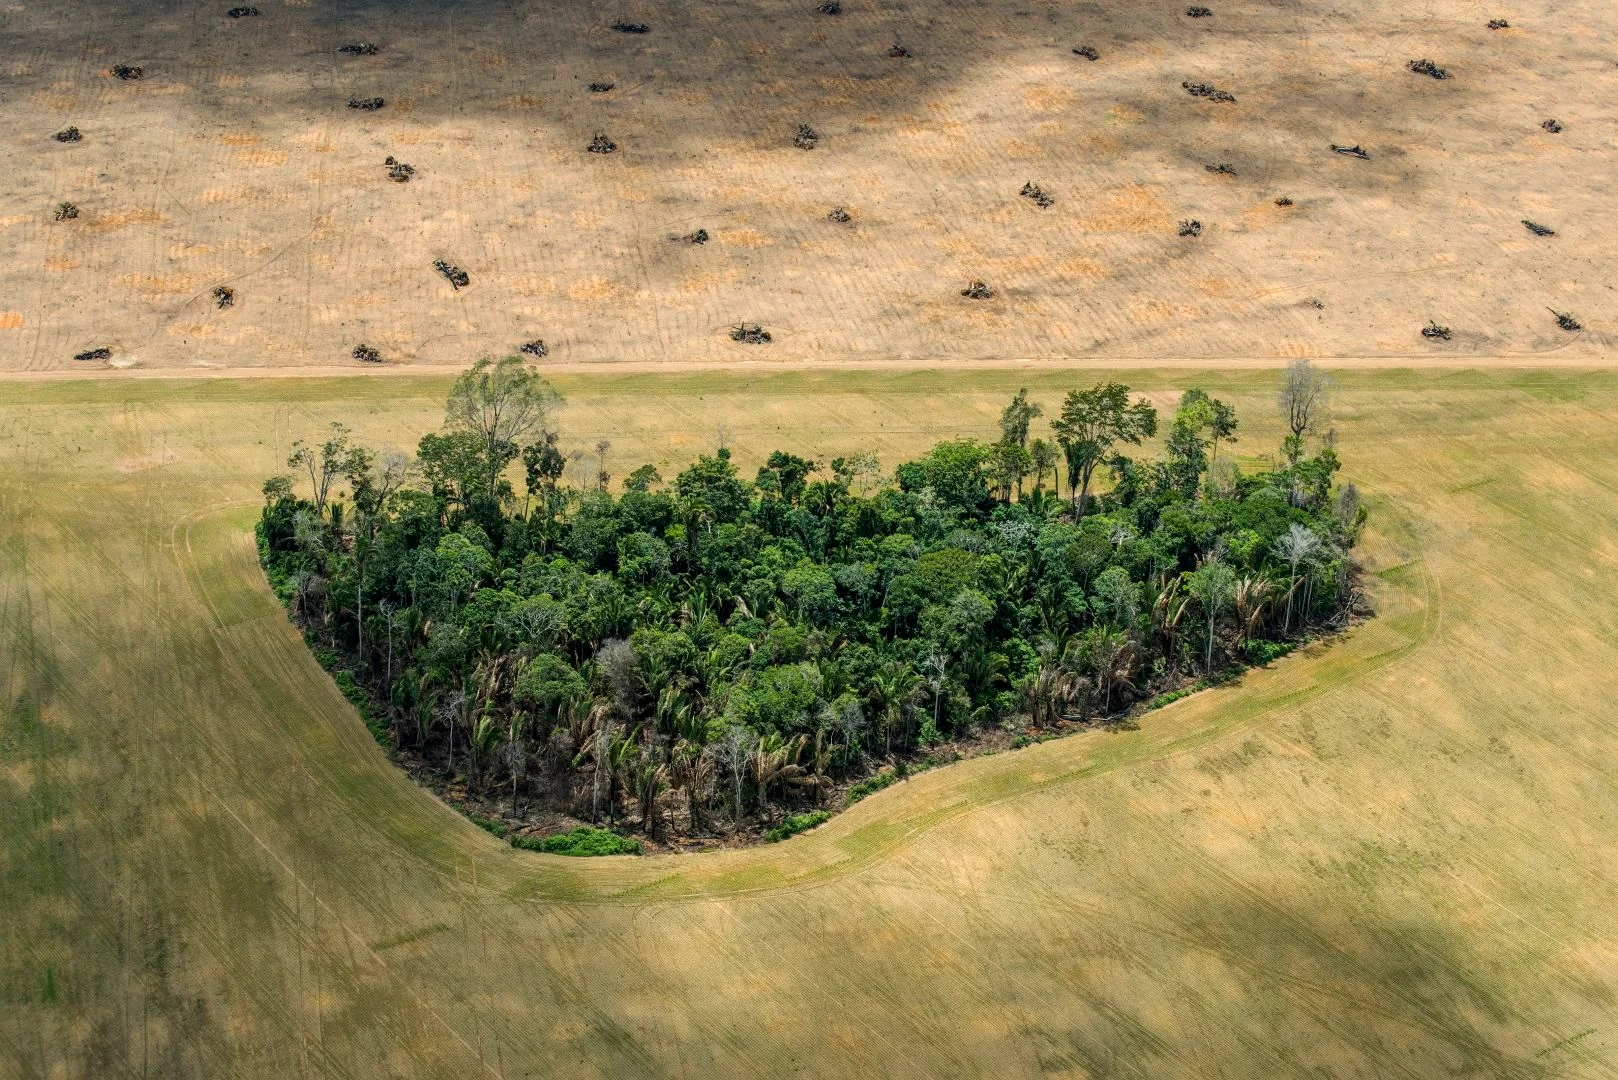 Un remanente de selva tropical se encuentra en campos despejados para la agricultura.